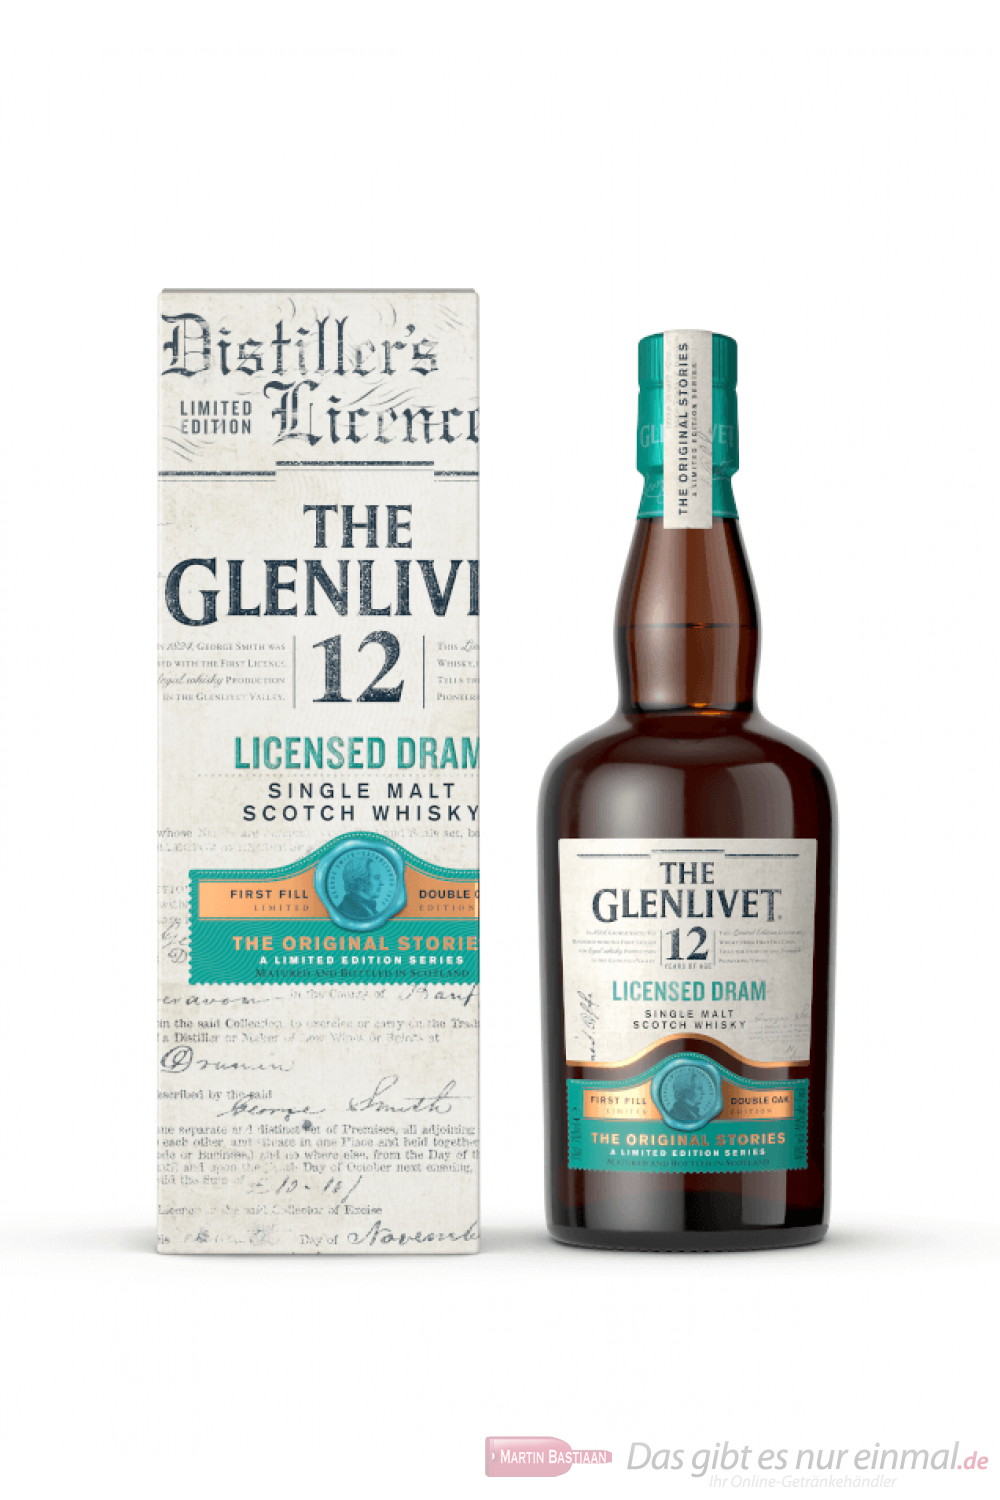 The Glenlivet 12 years Licensed Dram